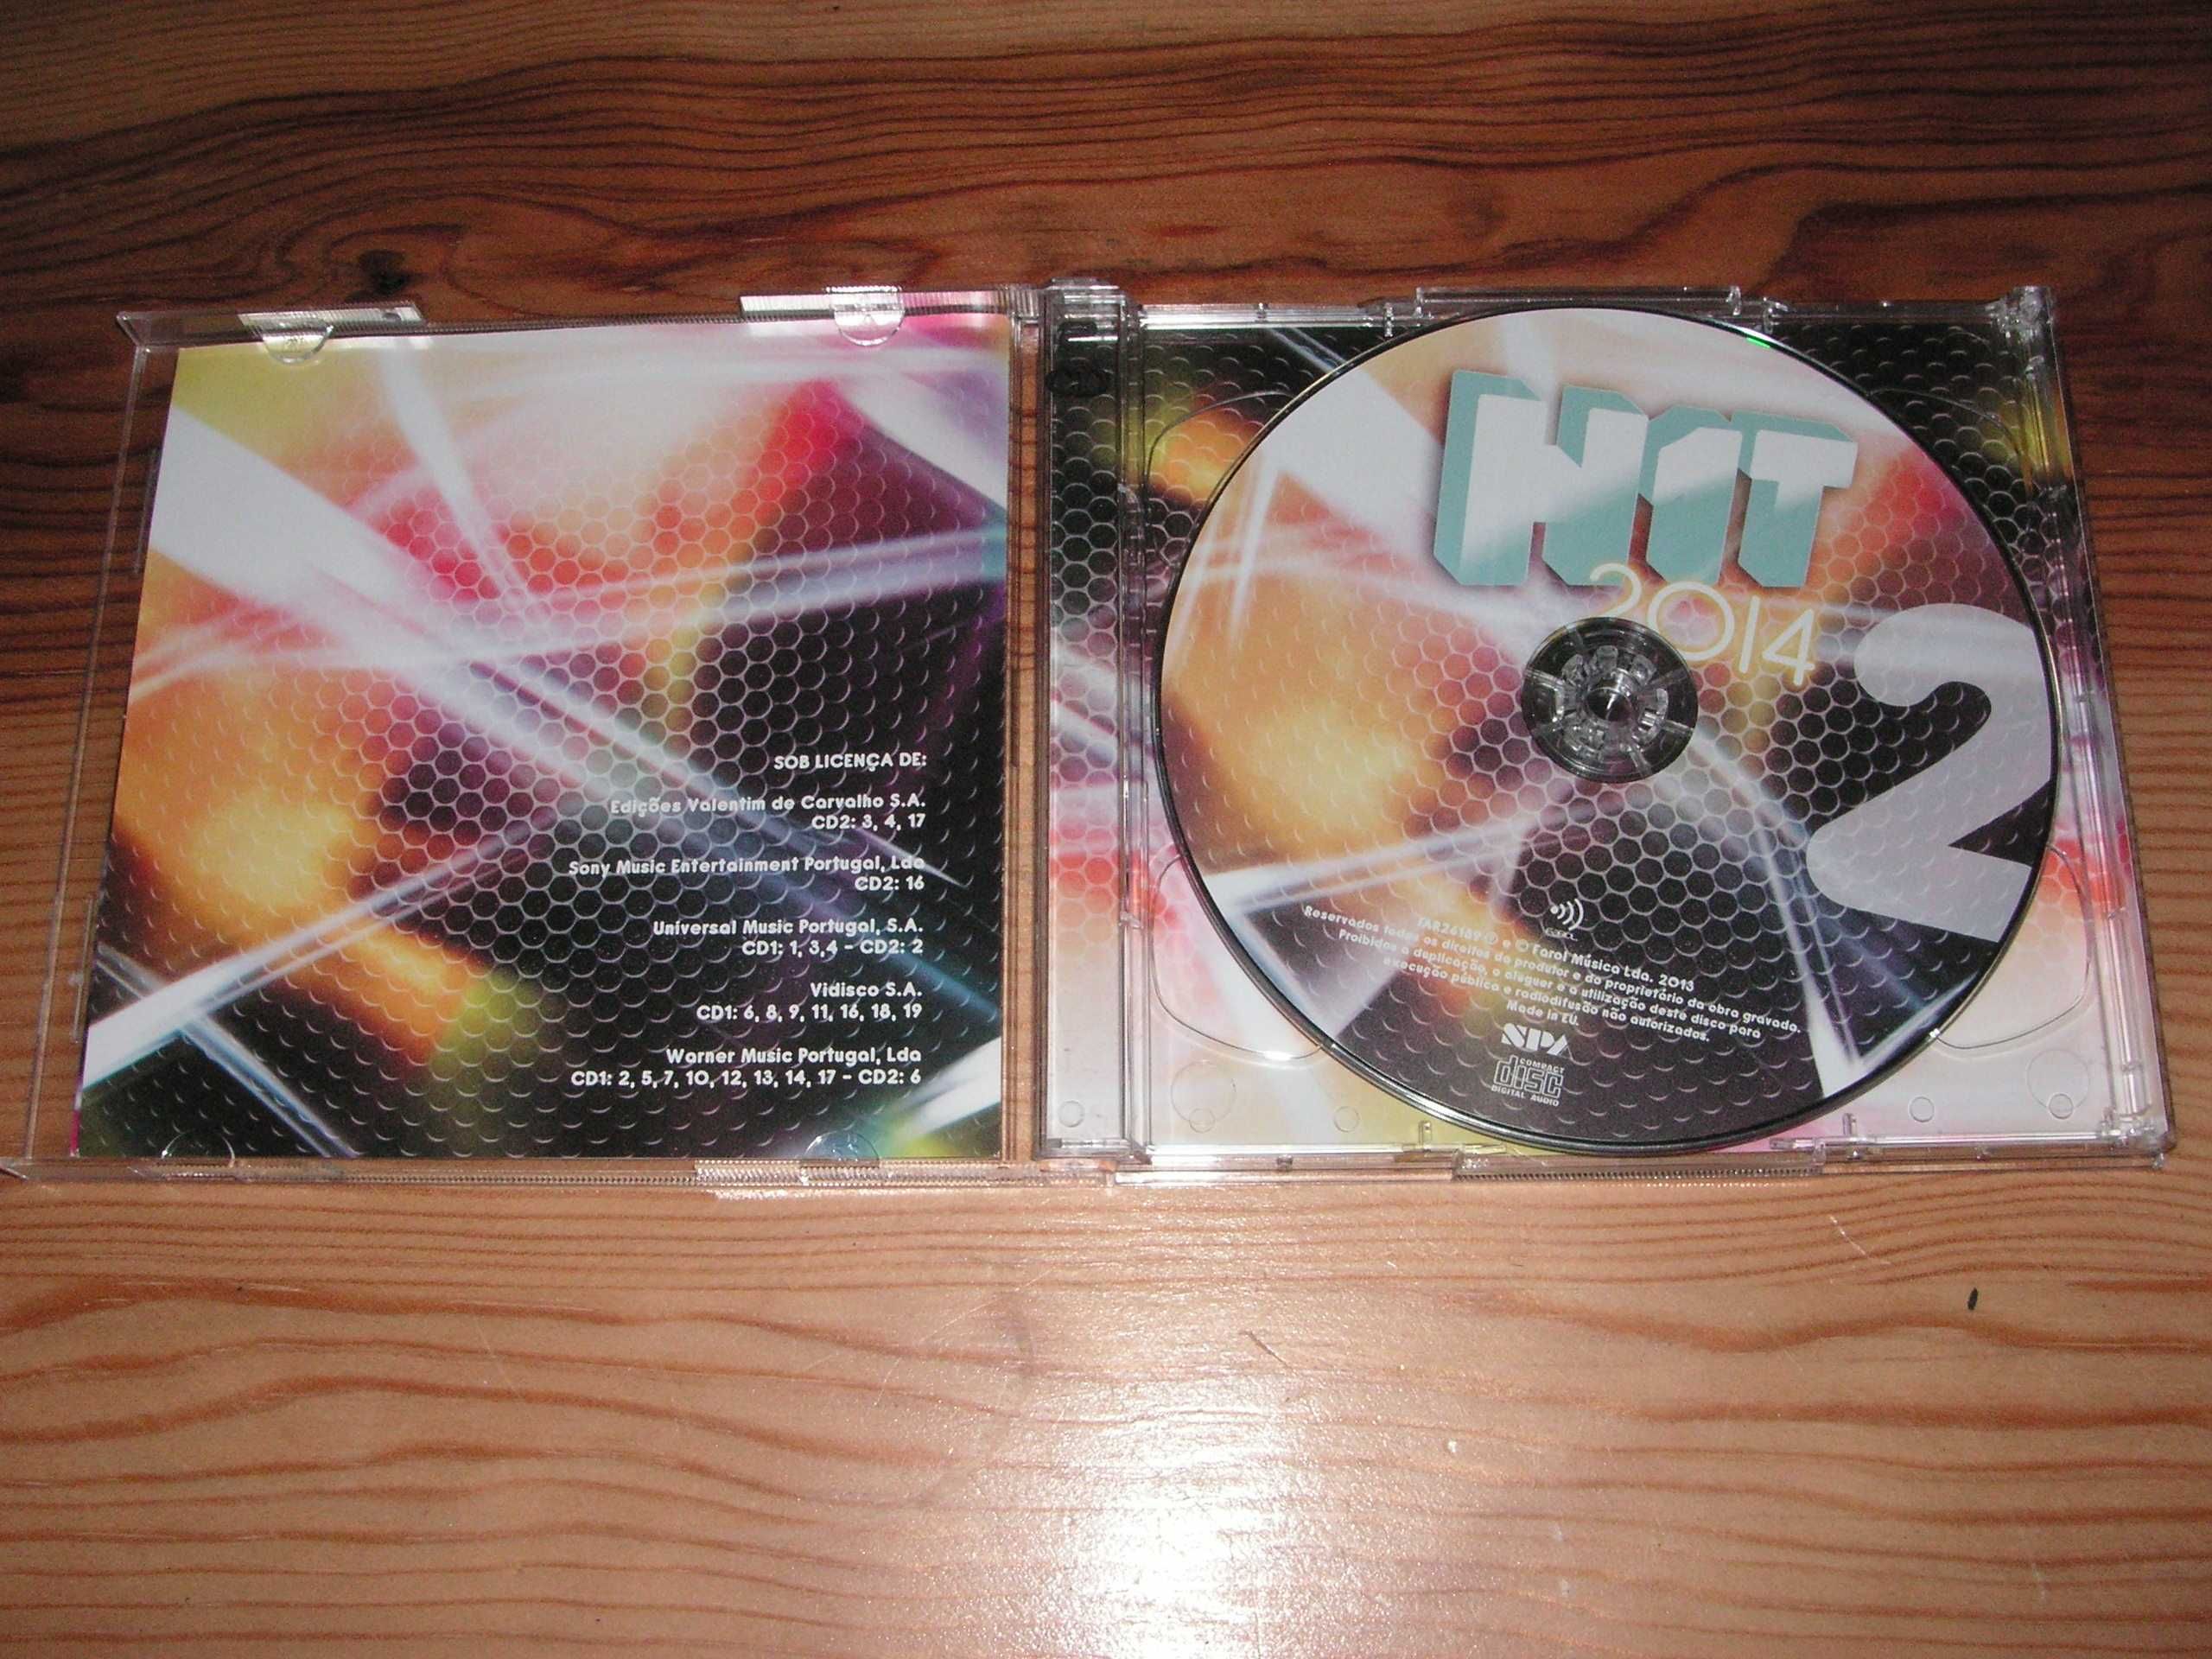 CD Hit 2014 ( 2 Cd's )